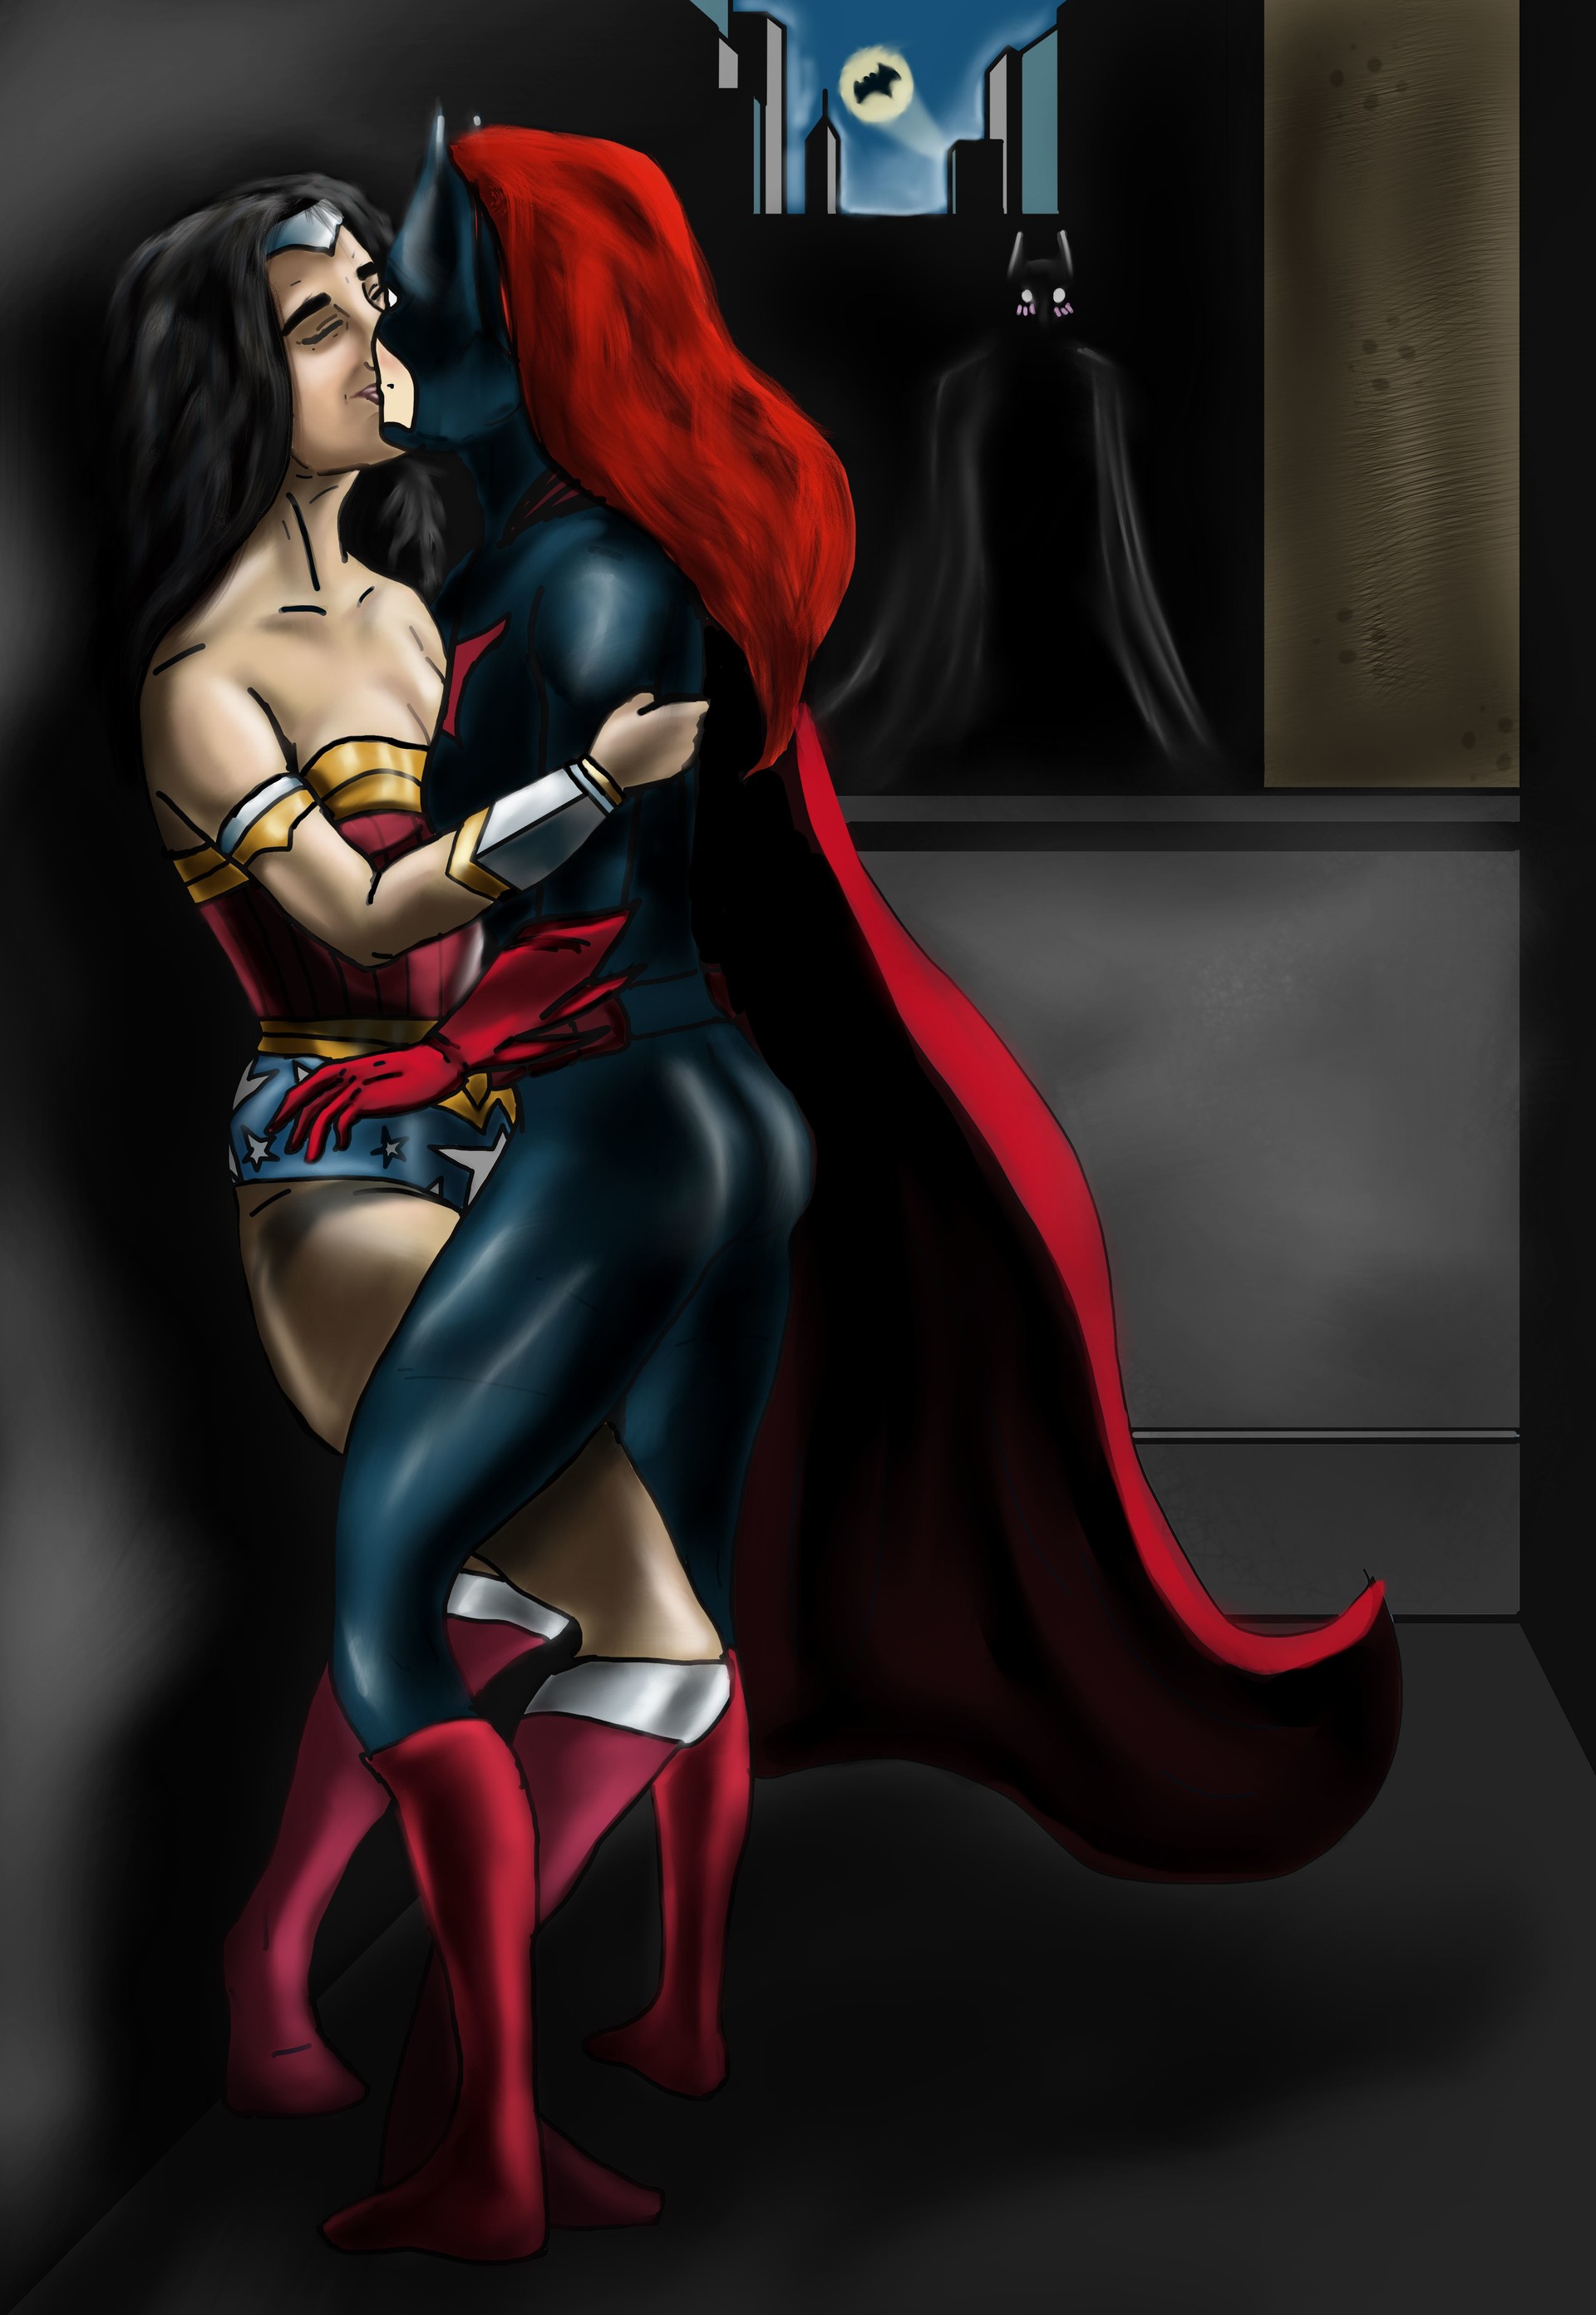 Супермен И Чудо Женщина Трахаются